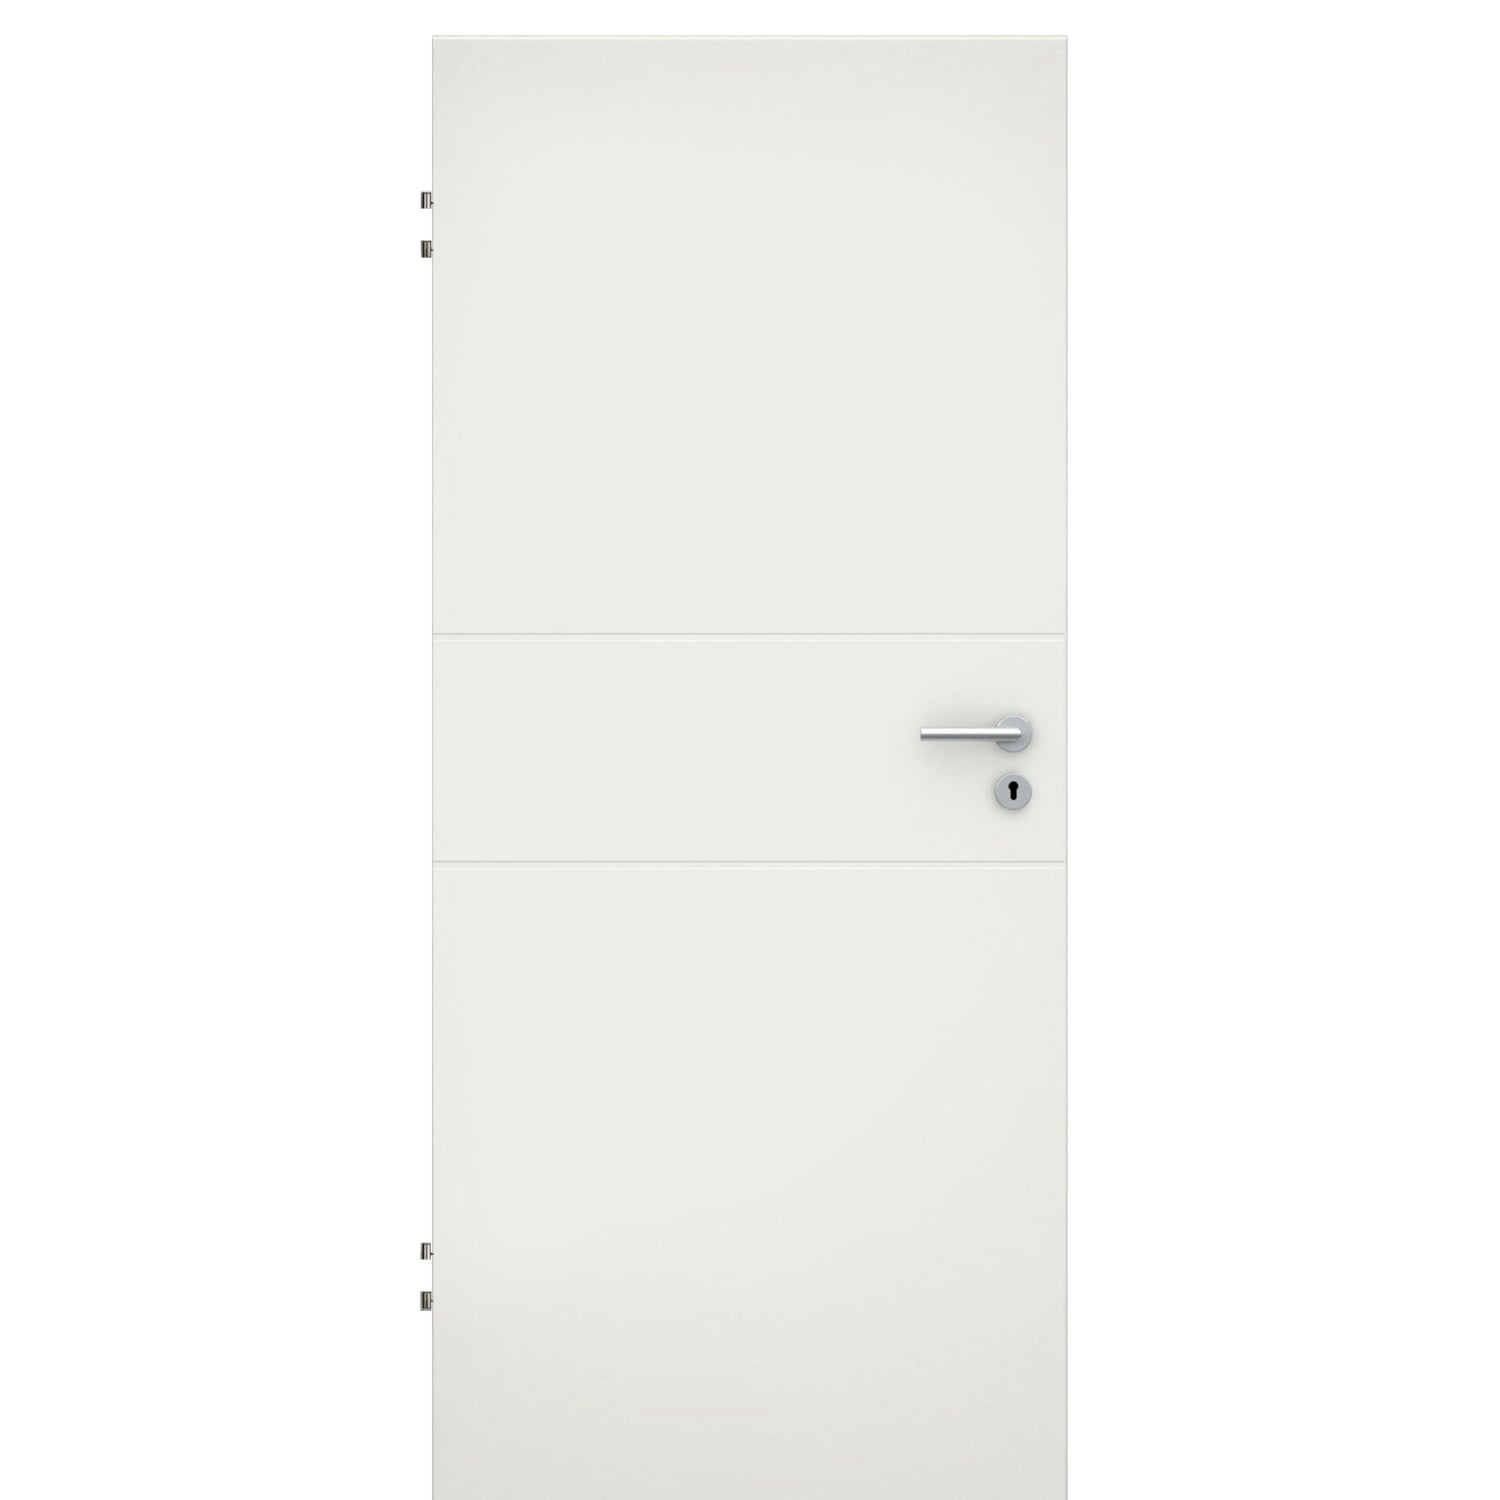 Wohnungseingangstür soft-weiß 2 Rillen Eckkante SK1 / KK3 - Modell Designtür Q21